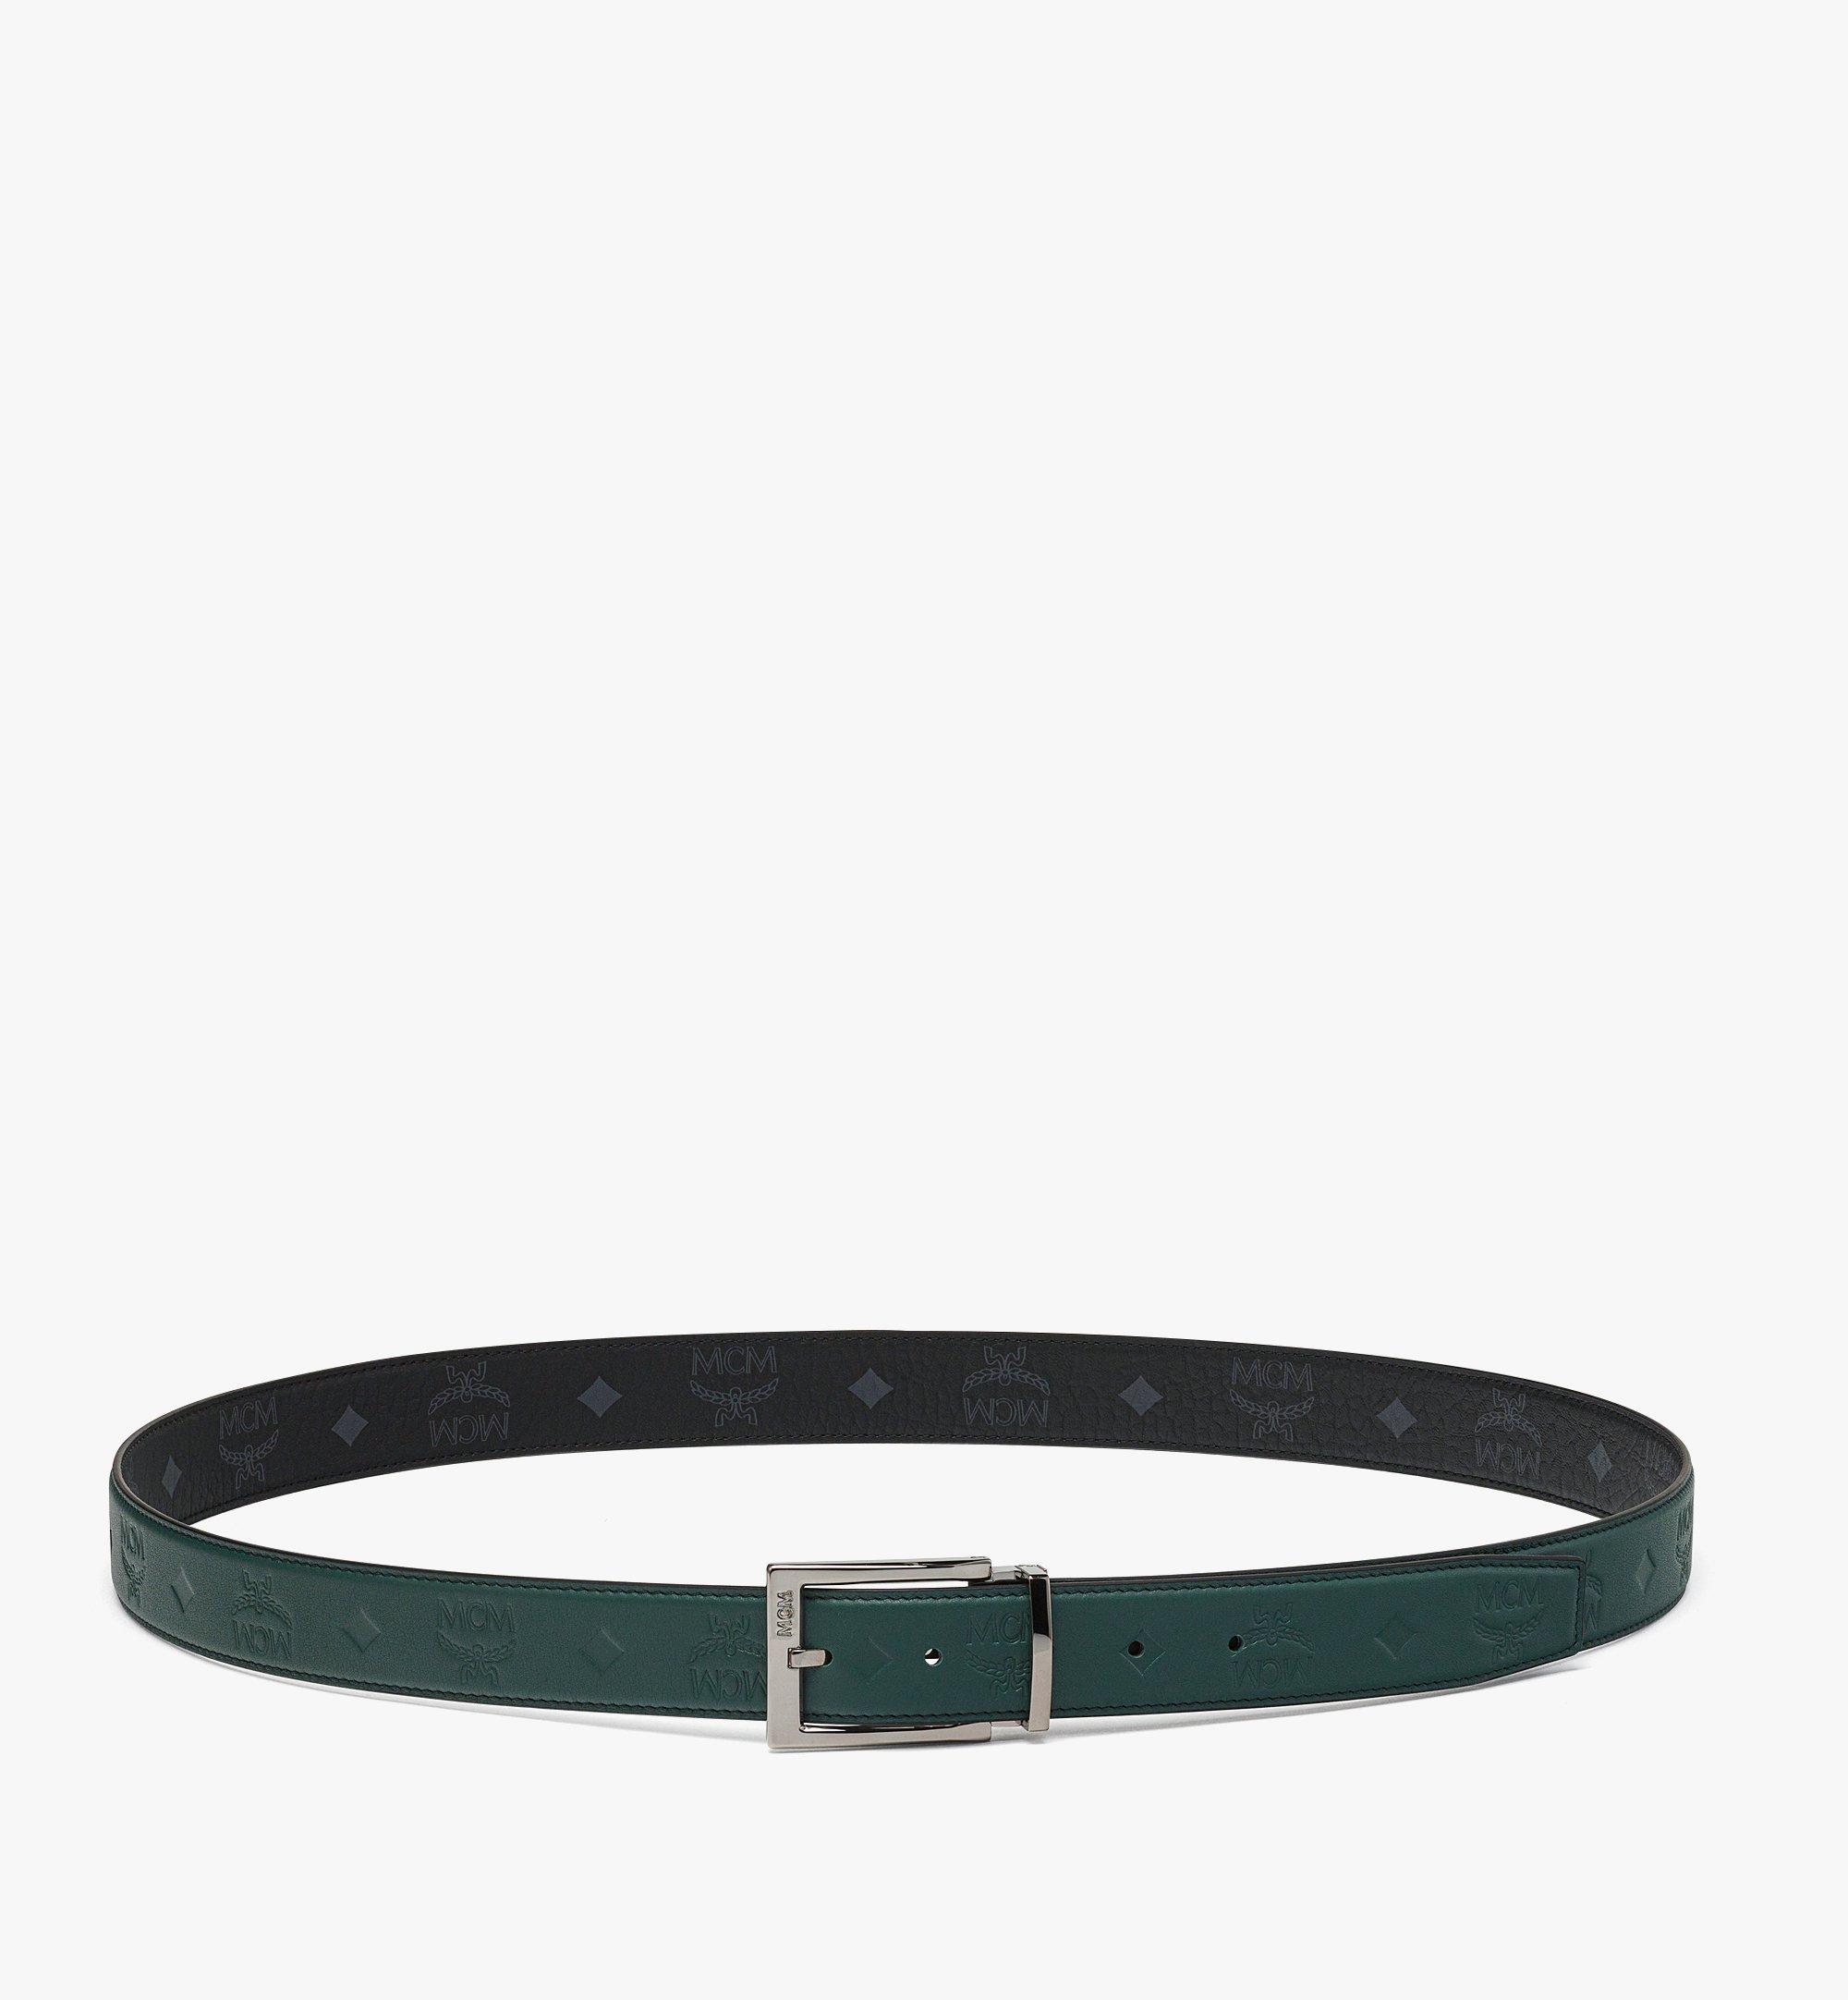 Buy Belts  Trending Designer Accessories Online